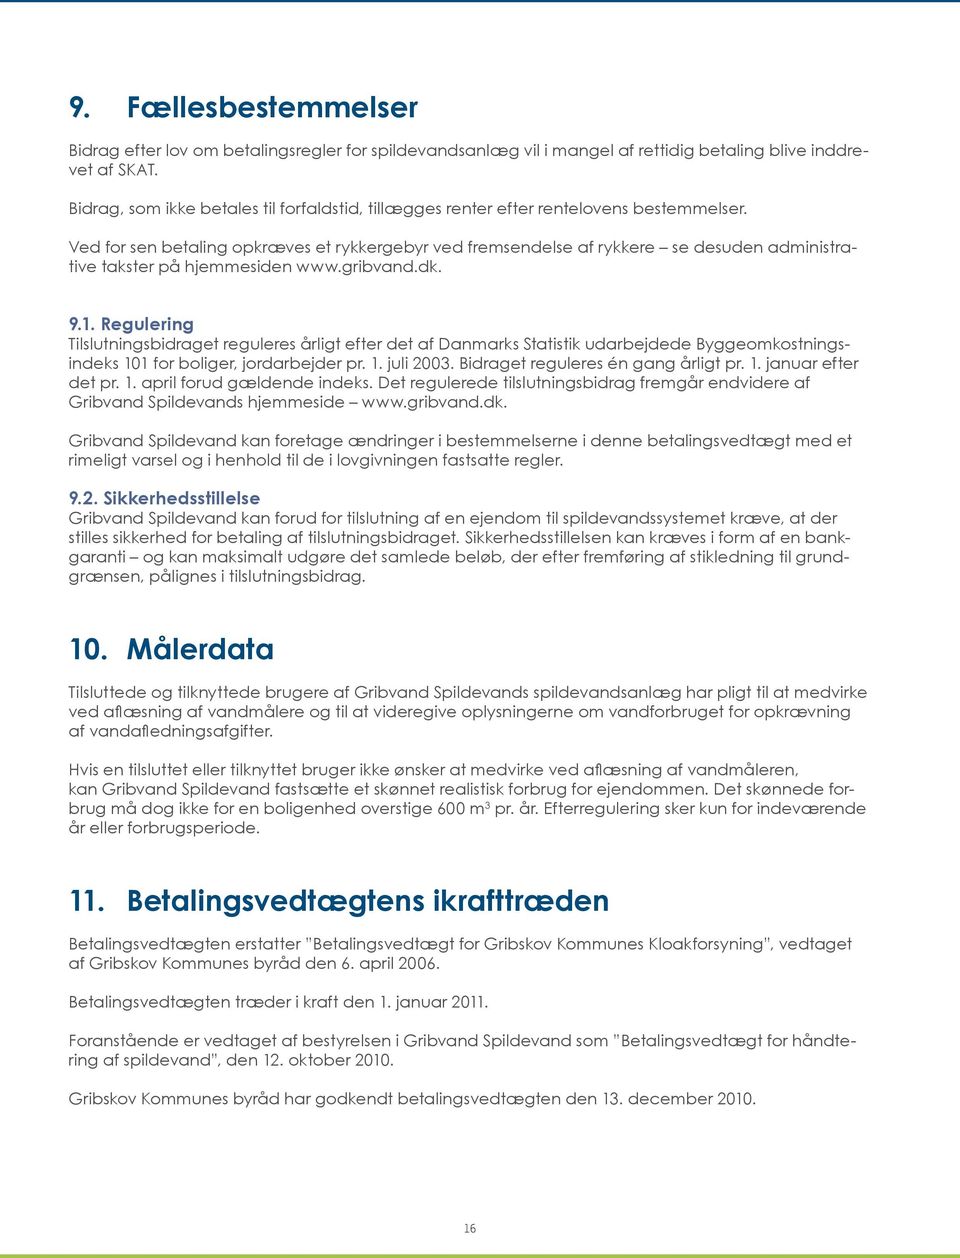 Ved for sen betaling opkræves et rykkergebyr ved fremsendelse af rykkere se desuden administrative takster på hjemmesiden www.gribvand.dk. 9.1.